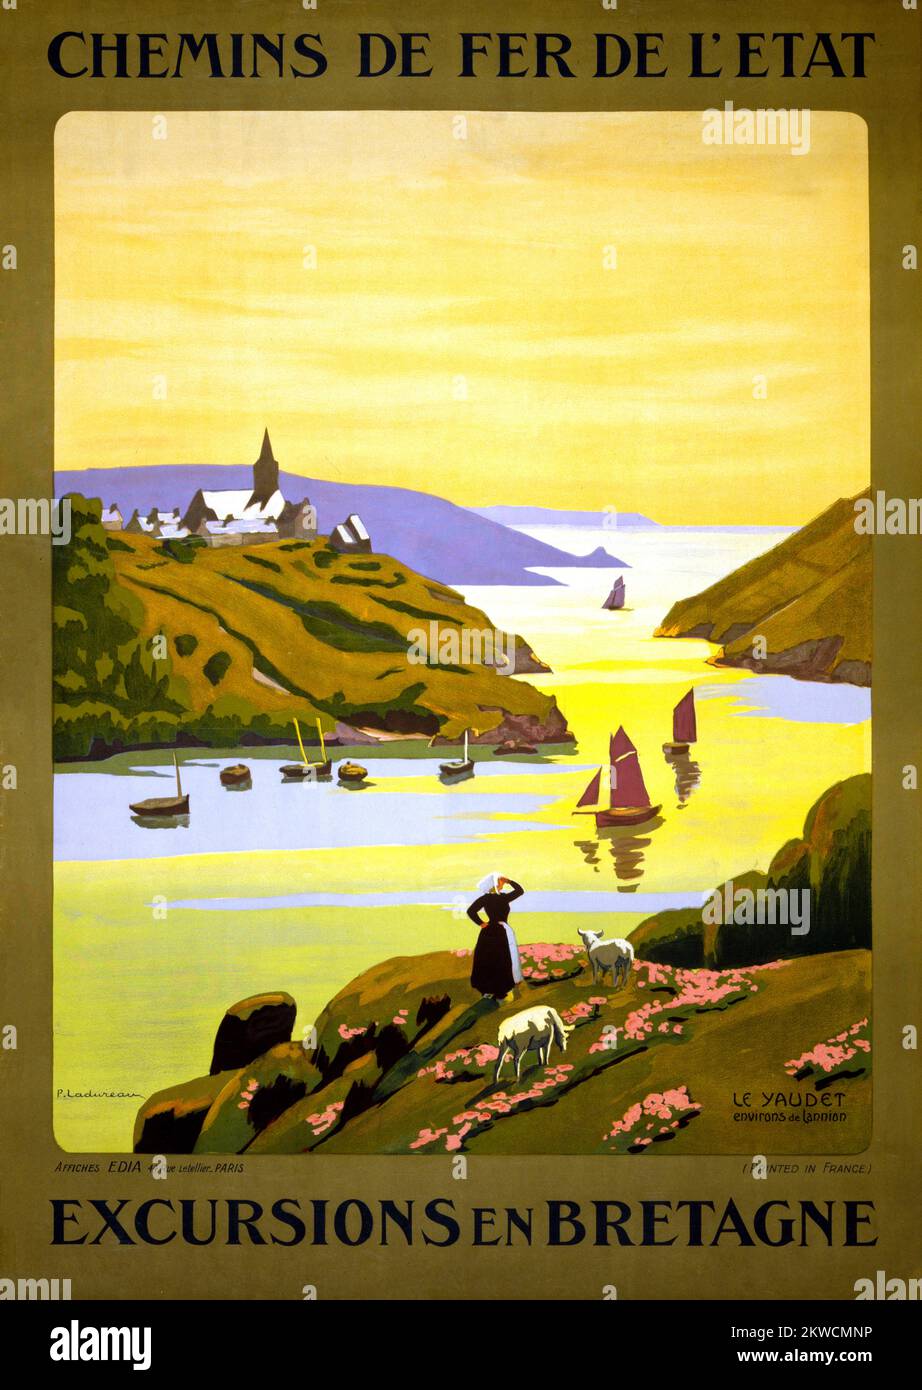 Chemins de fer de l'état. Ausflüge nach Bretagne von Pierre Ladureau (1882-1975). Poster wurde 1940 in Frankreich veröffentlicht. Stockfoto